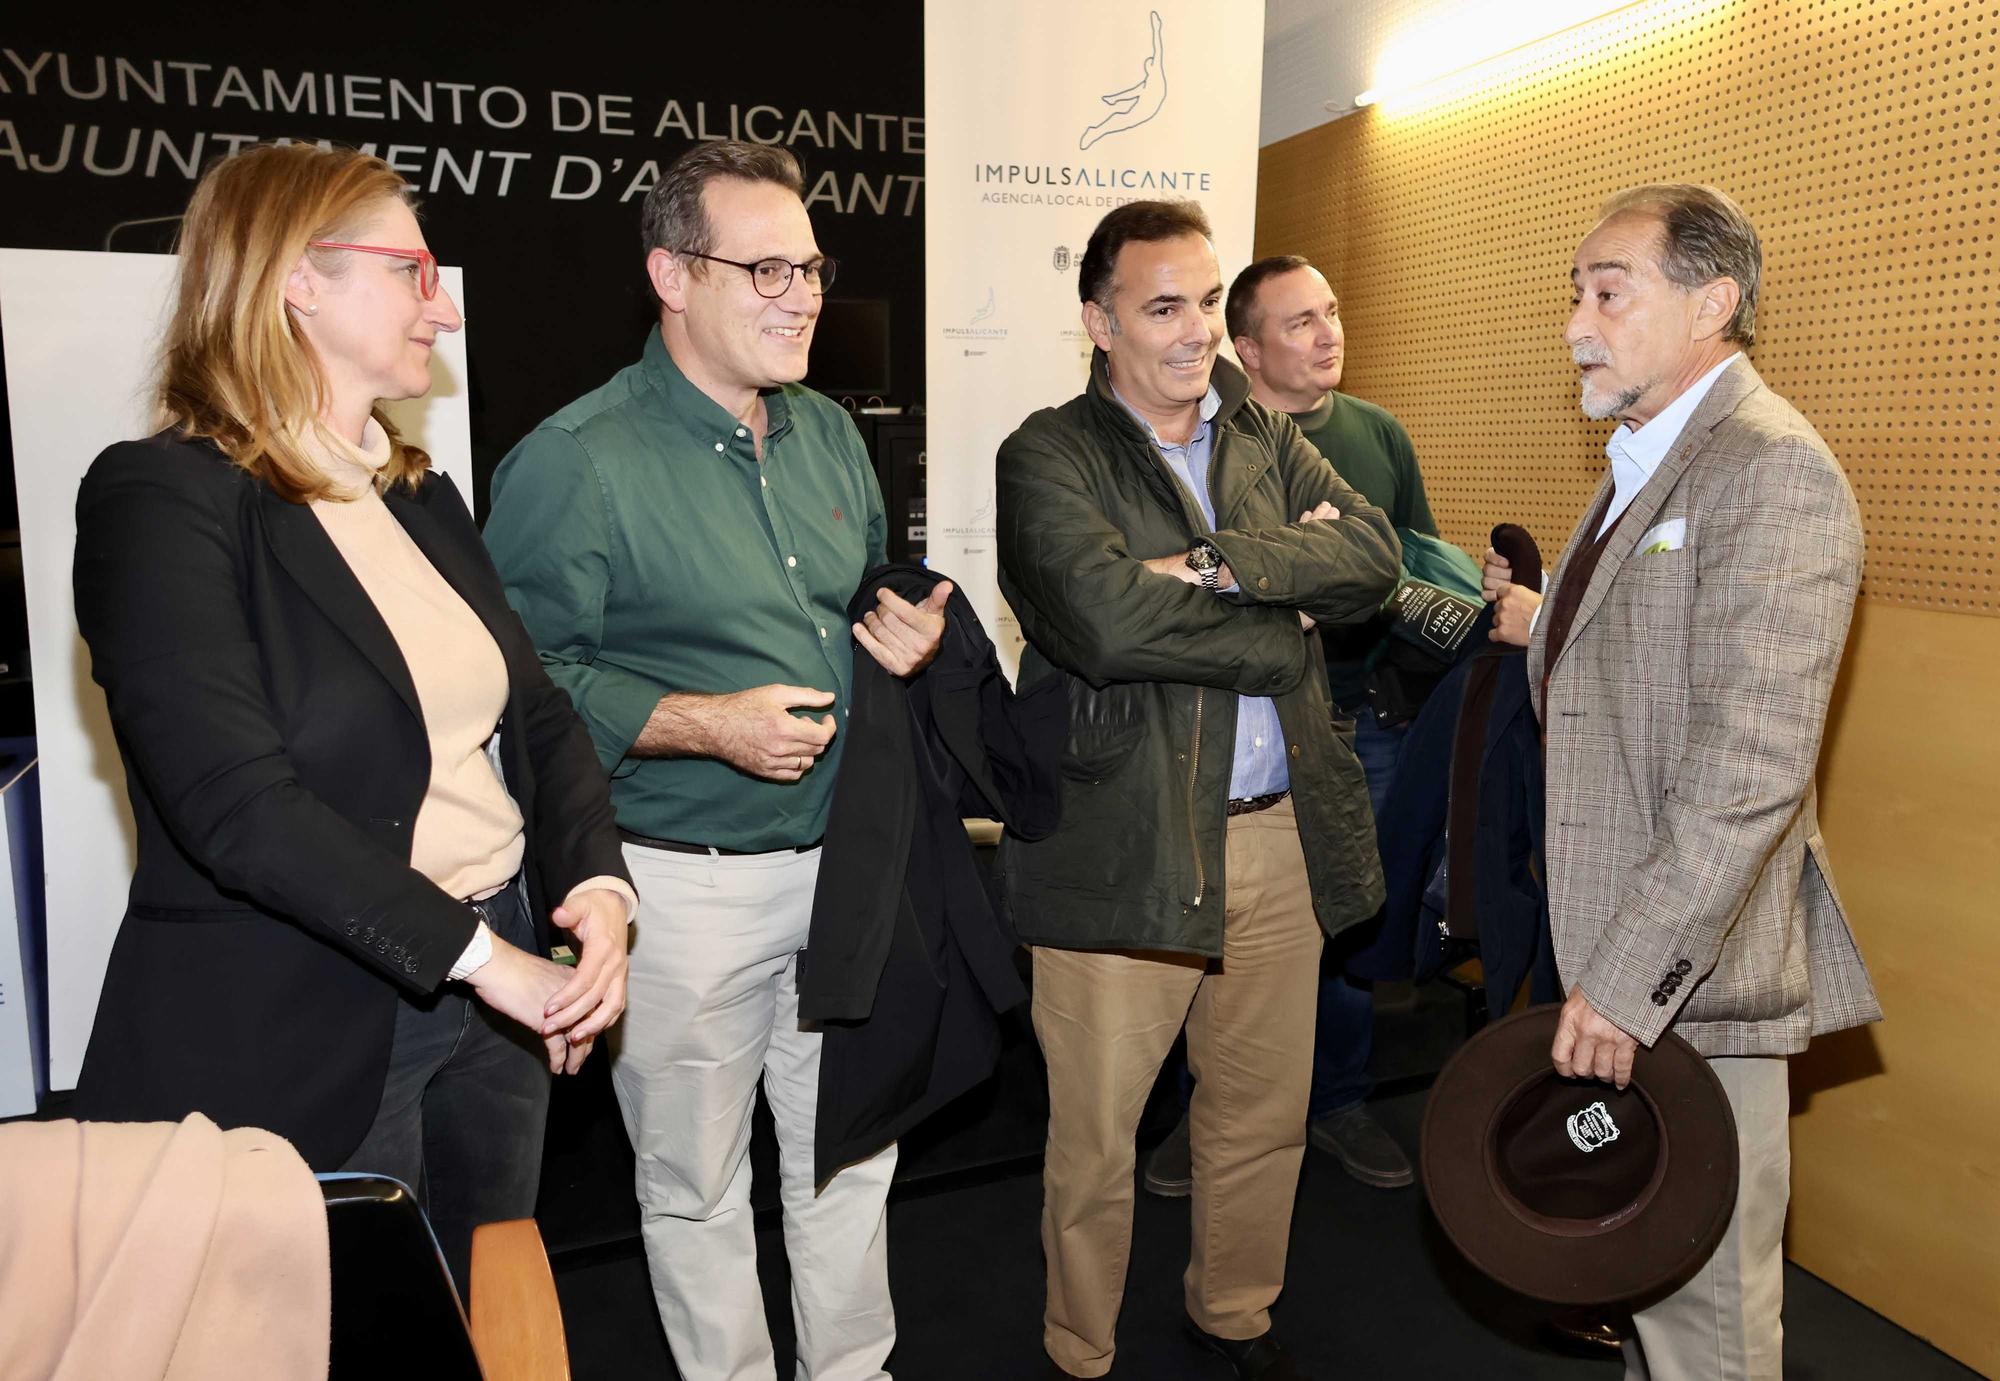 Luis Francisco Esplá y Carlos Marzal presentan la revista taurina "Quites" en Alicante